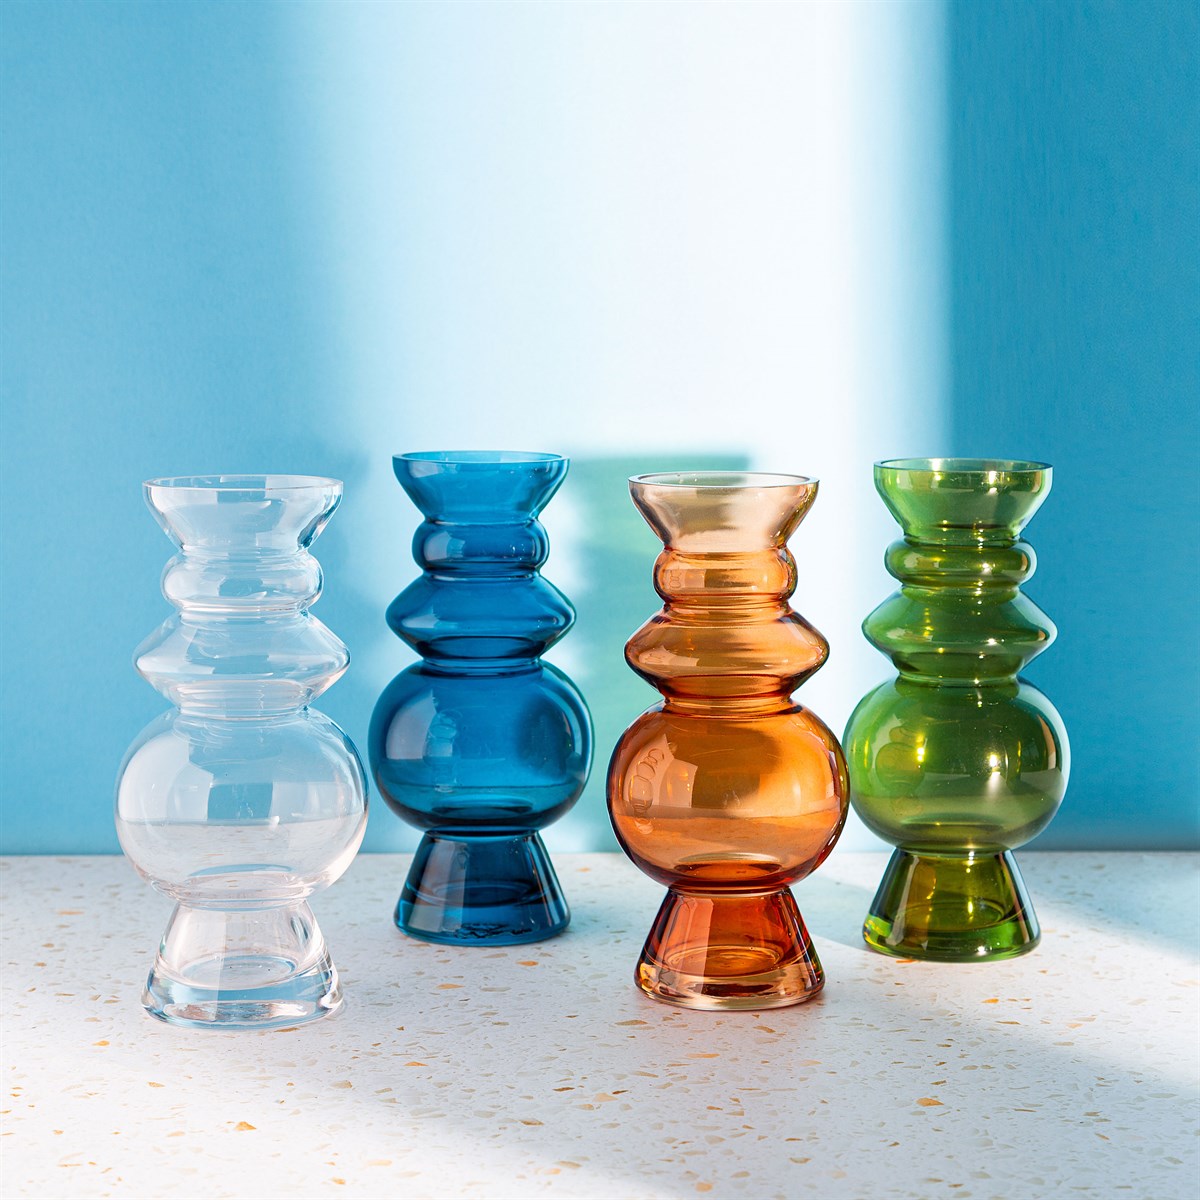 Selina Glass Vase in Blue